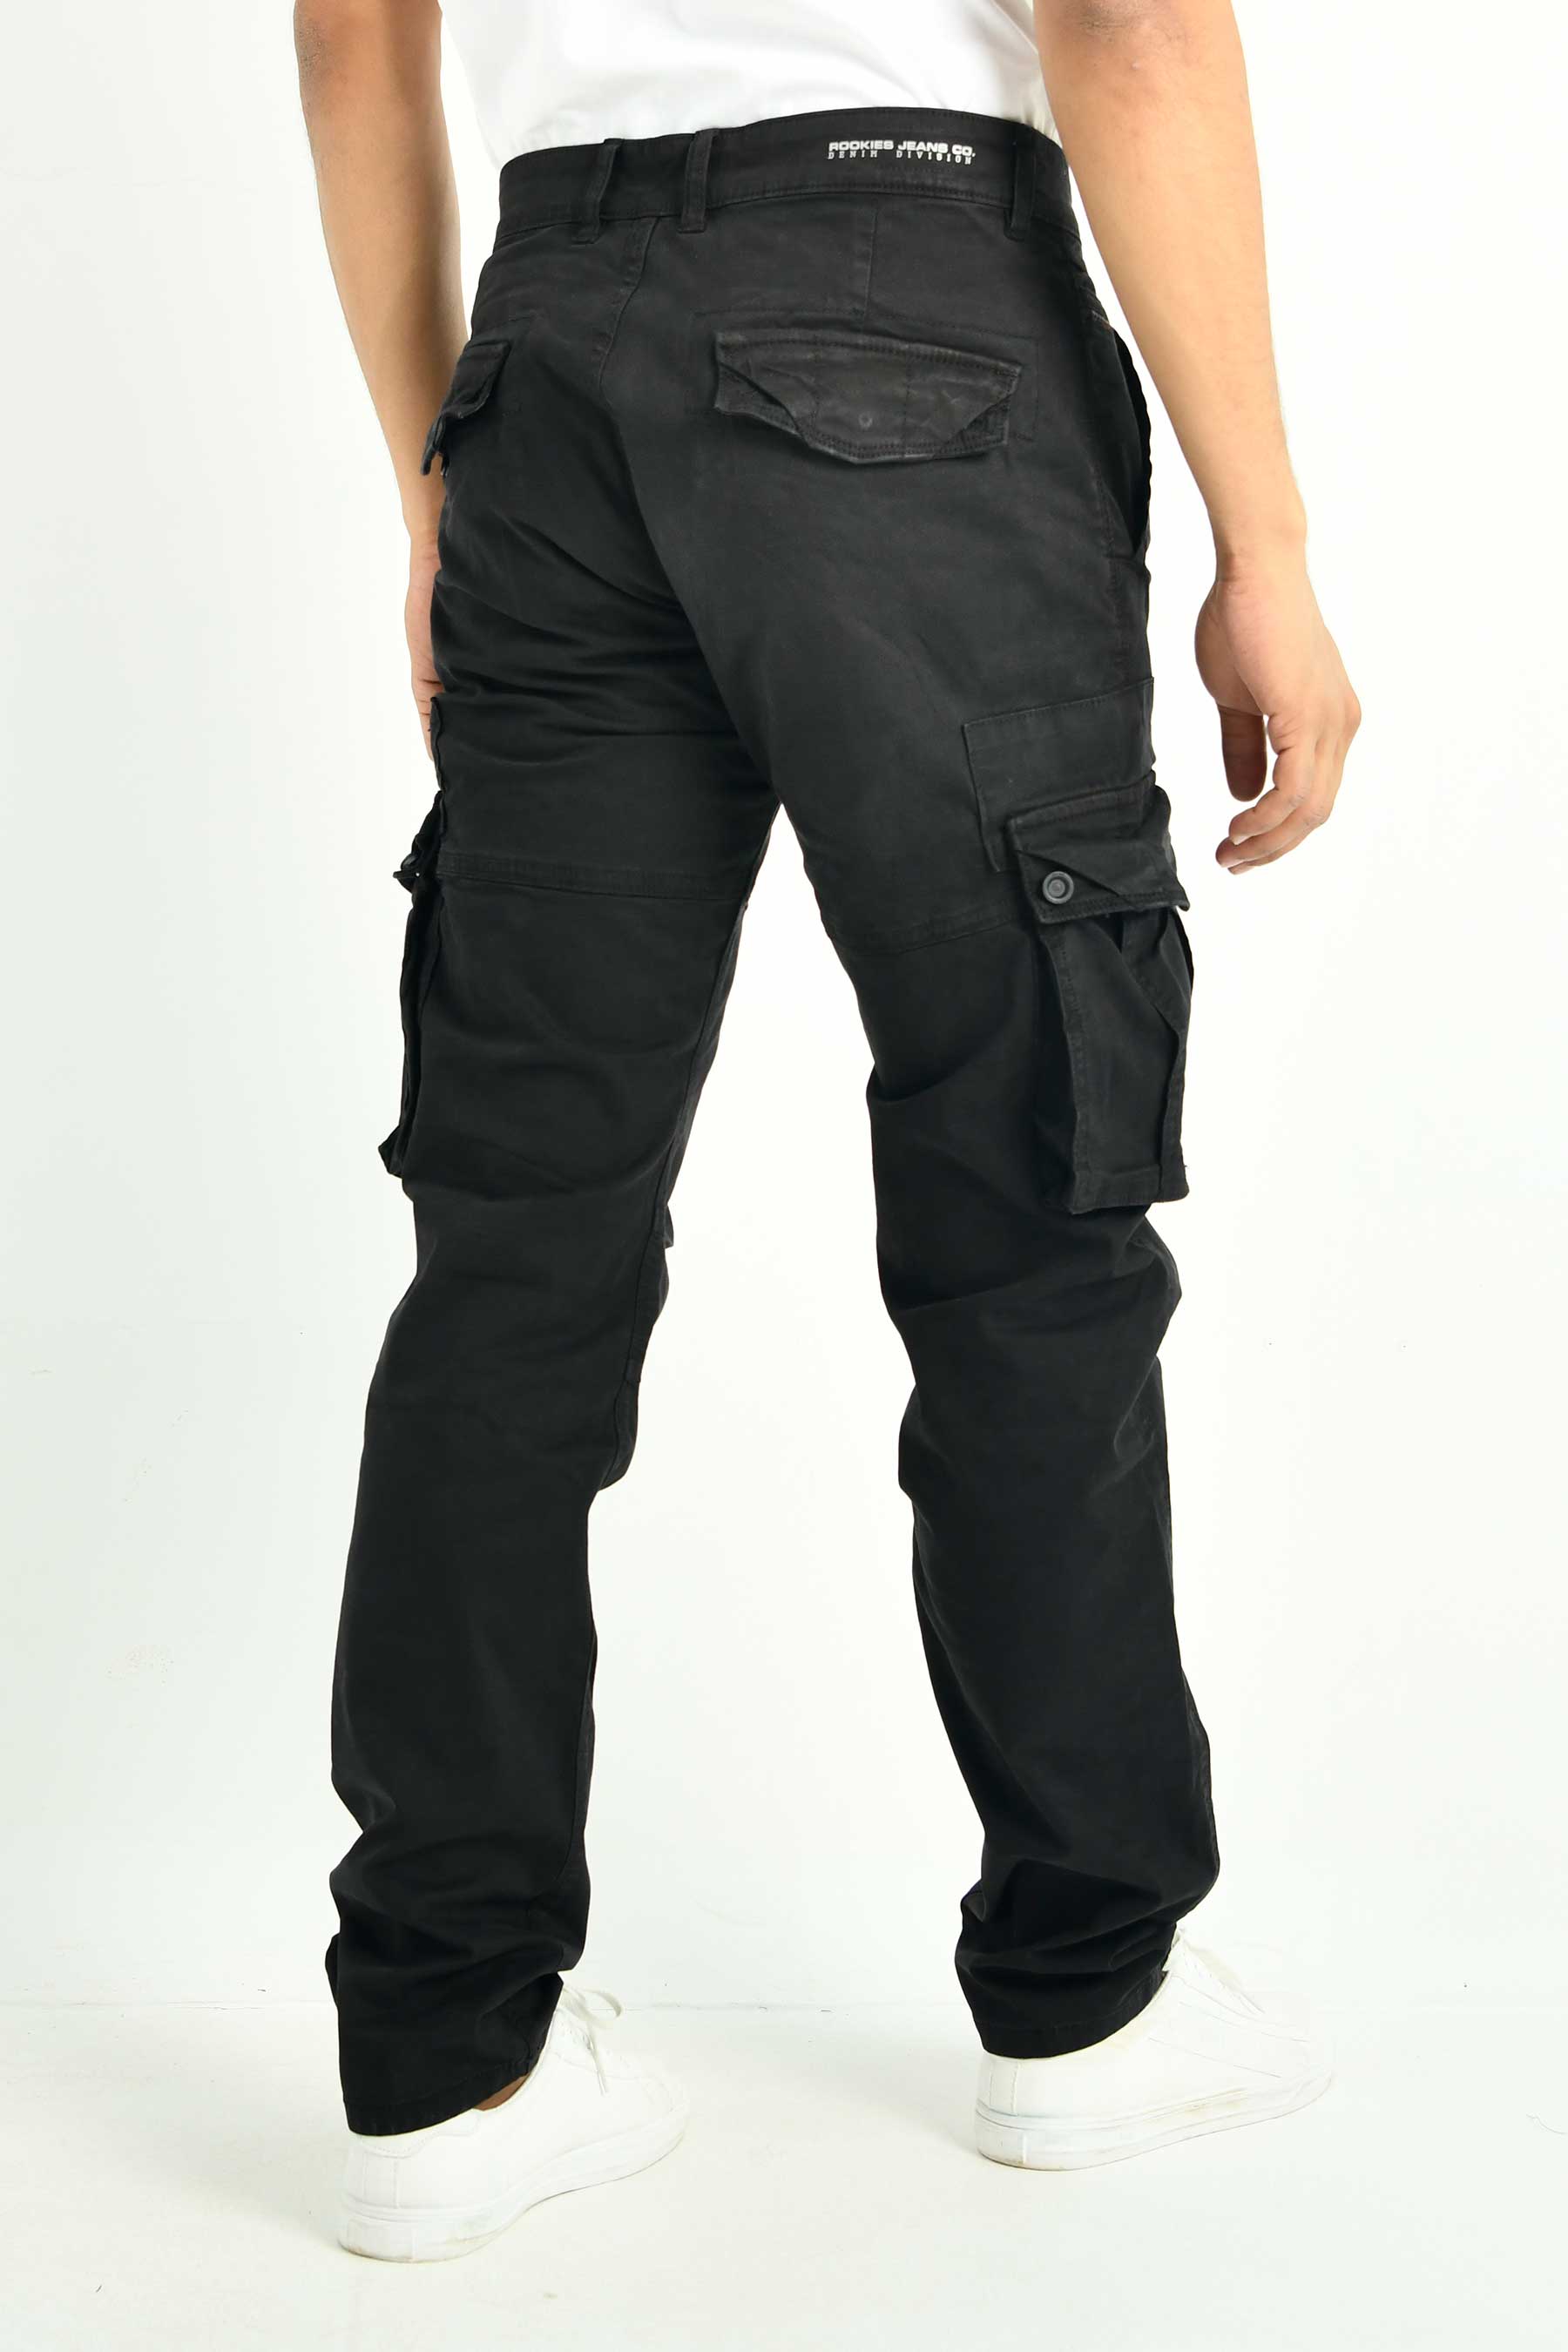 Men's Cargo Pant - Rookies Jeans Co.